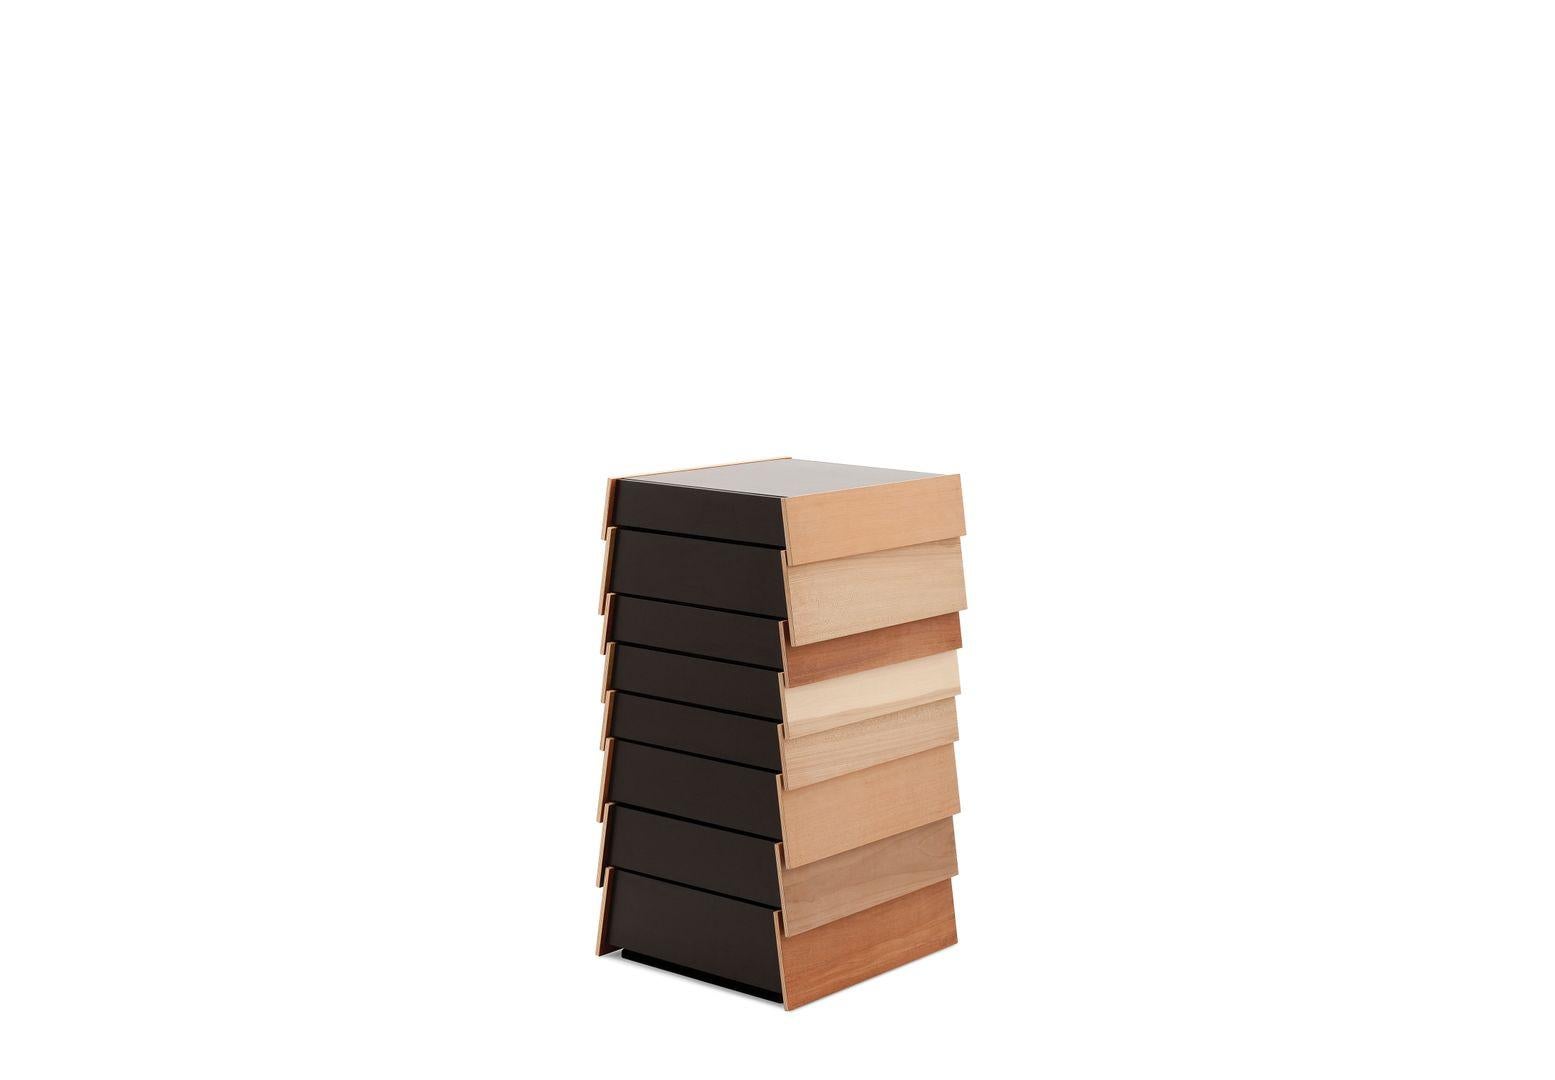 Stack stellt die Konventionen eines traditionellen Schubladenkastens in Frage und besteht aus einzelnen, mehrfarbigen Schubladen, die übereinander zu schweben scheinen und sich in beide Richtungen öffnen, wodurch eine unregelmäßige Komposition